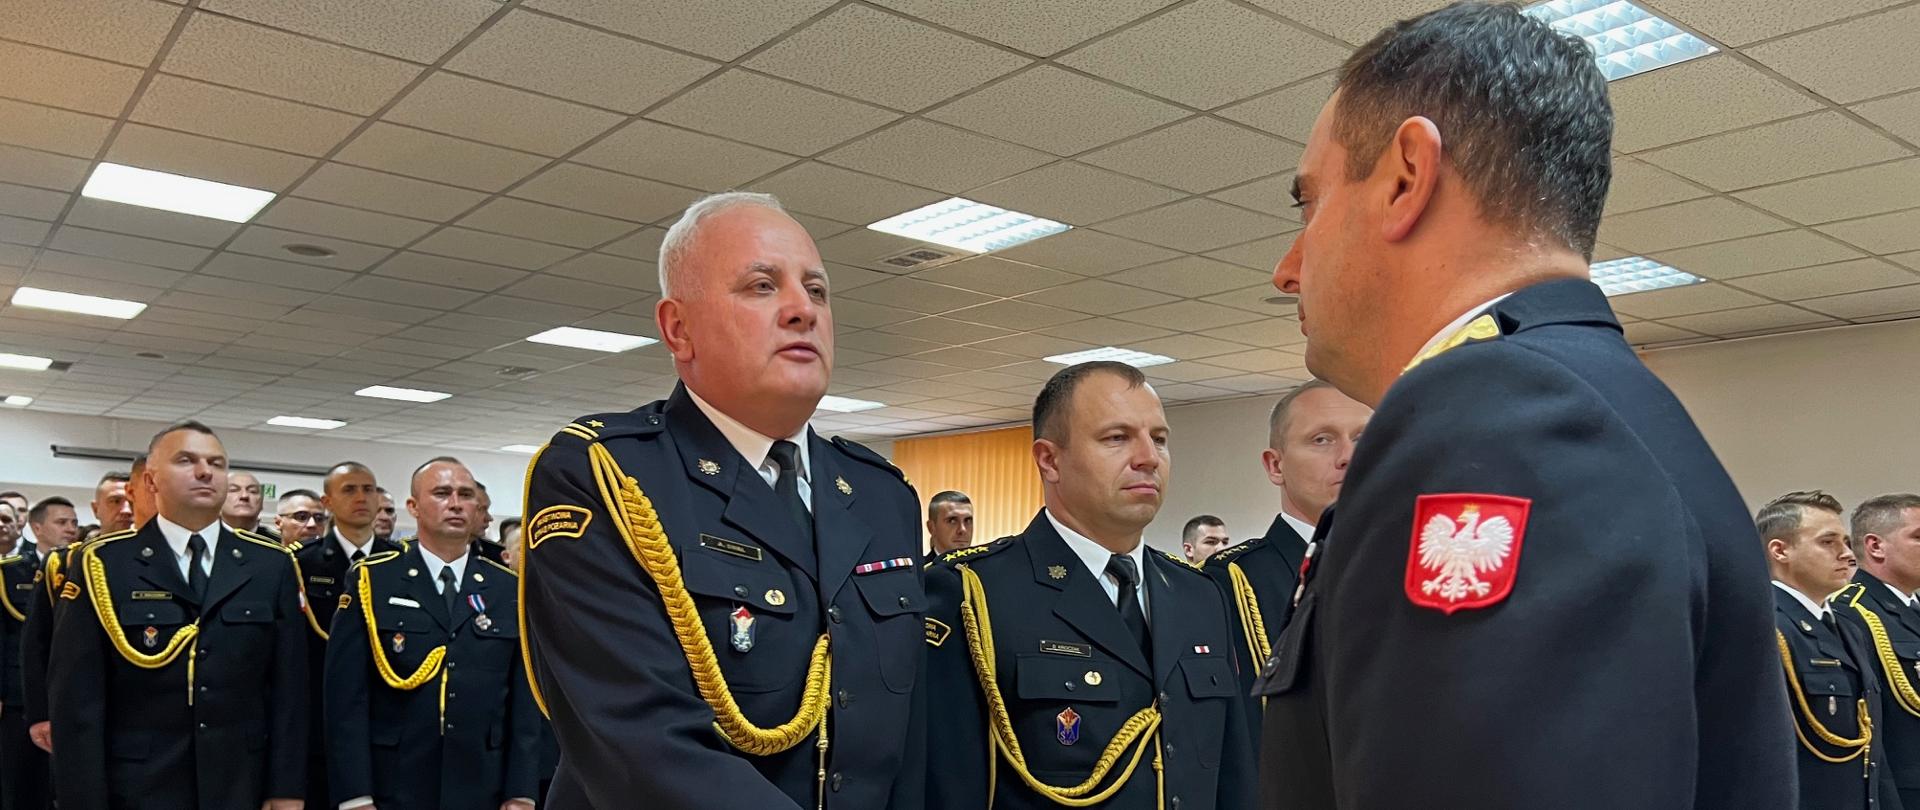 Świętokrzyscy strażacy odebrali awanse i wyróżnienia